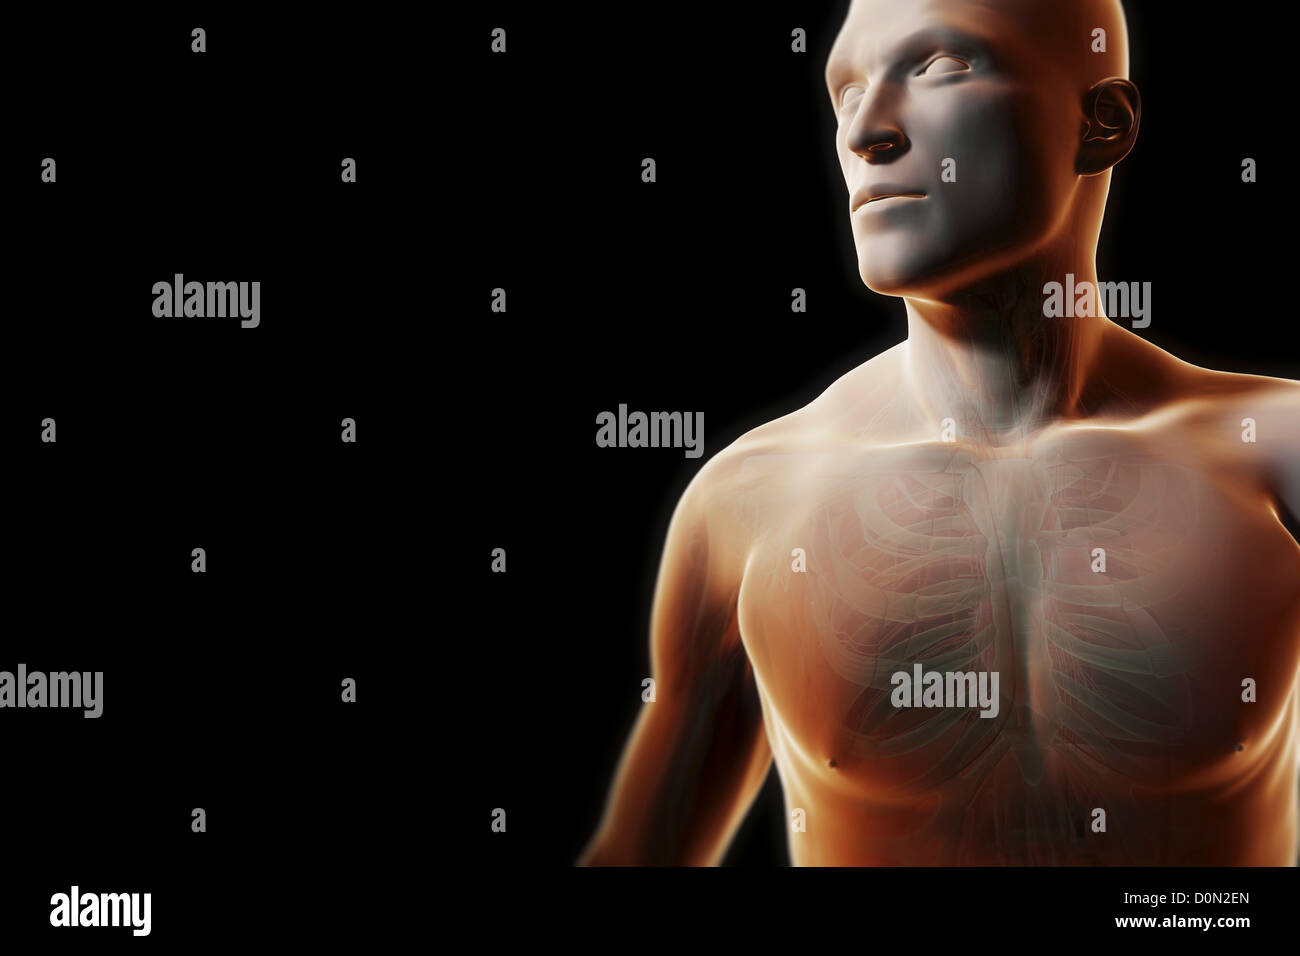 Vorderansicht des männlichen Figur mit transparenten Haut teilweise offenbart die innere Anatomie der Brust. Stockfoto